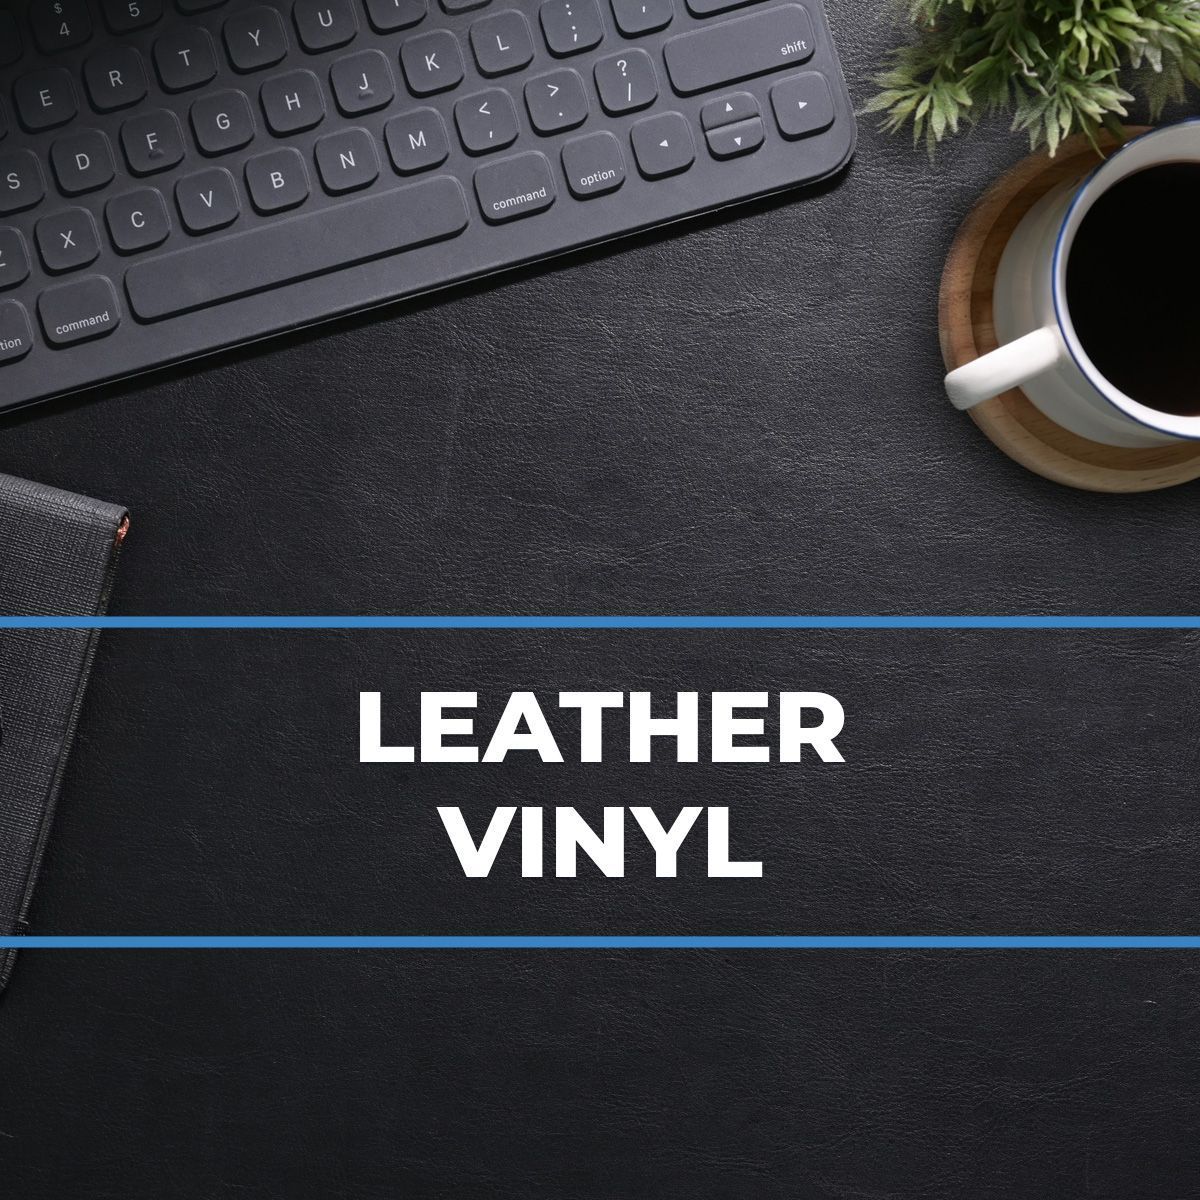 Leather Vinyl